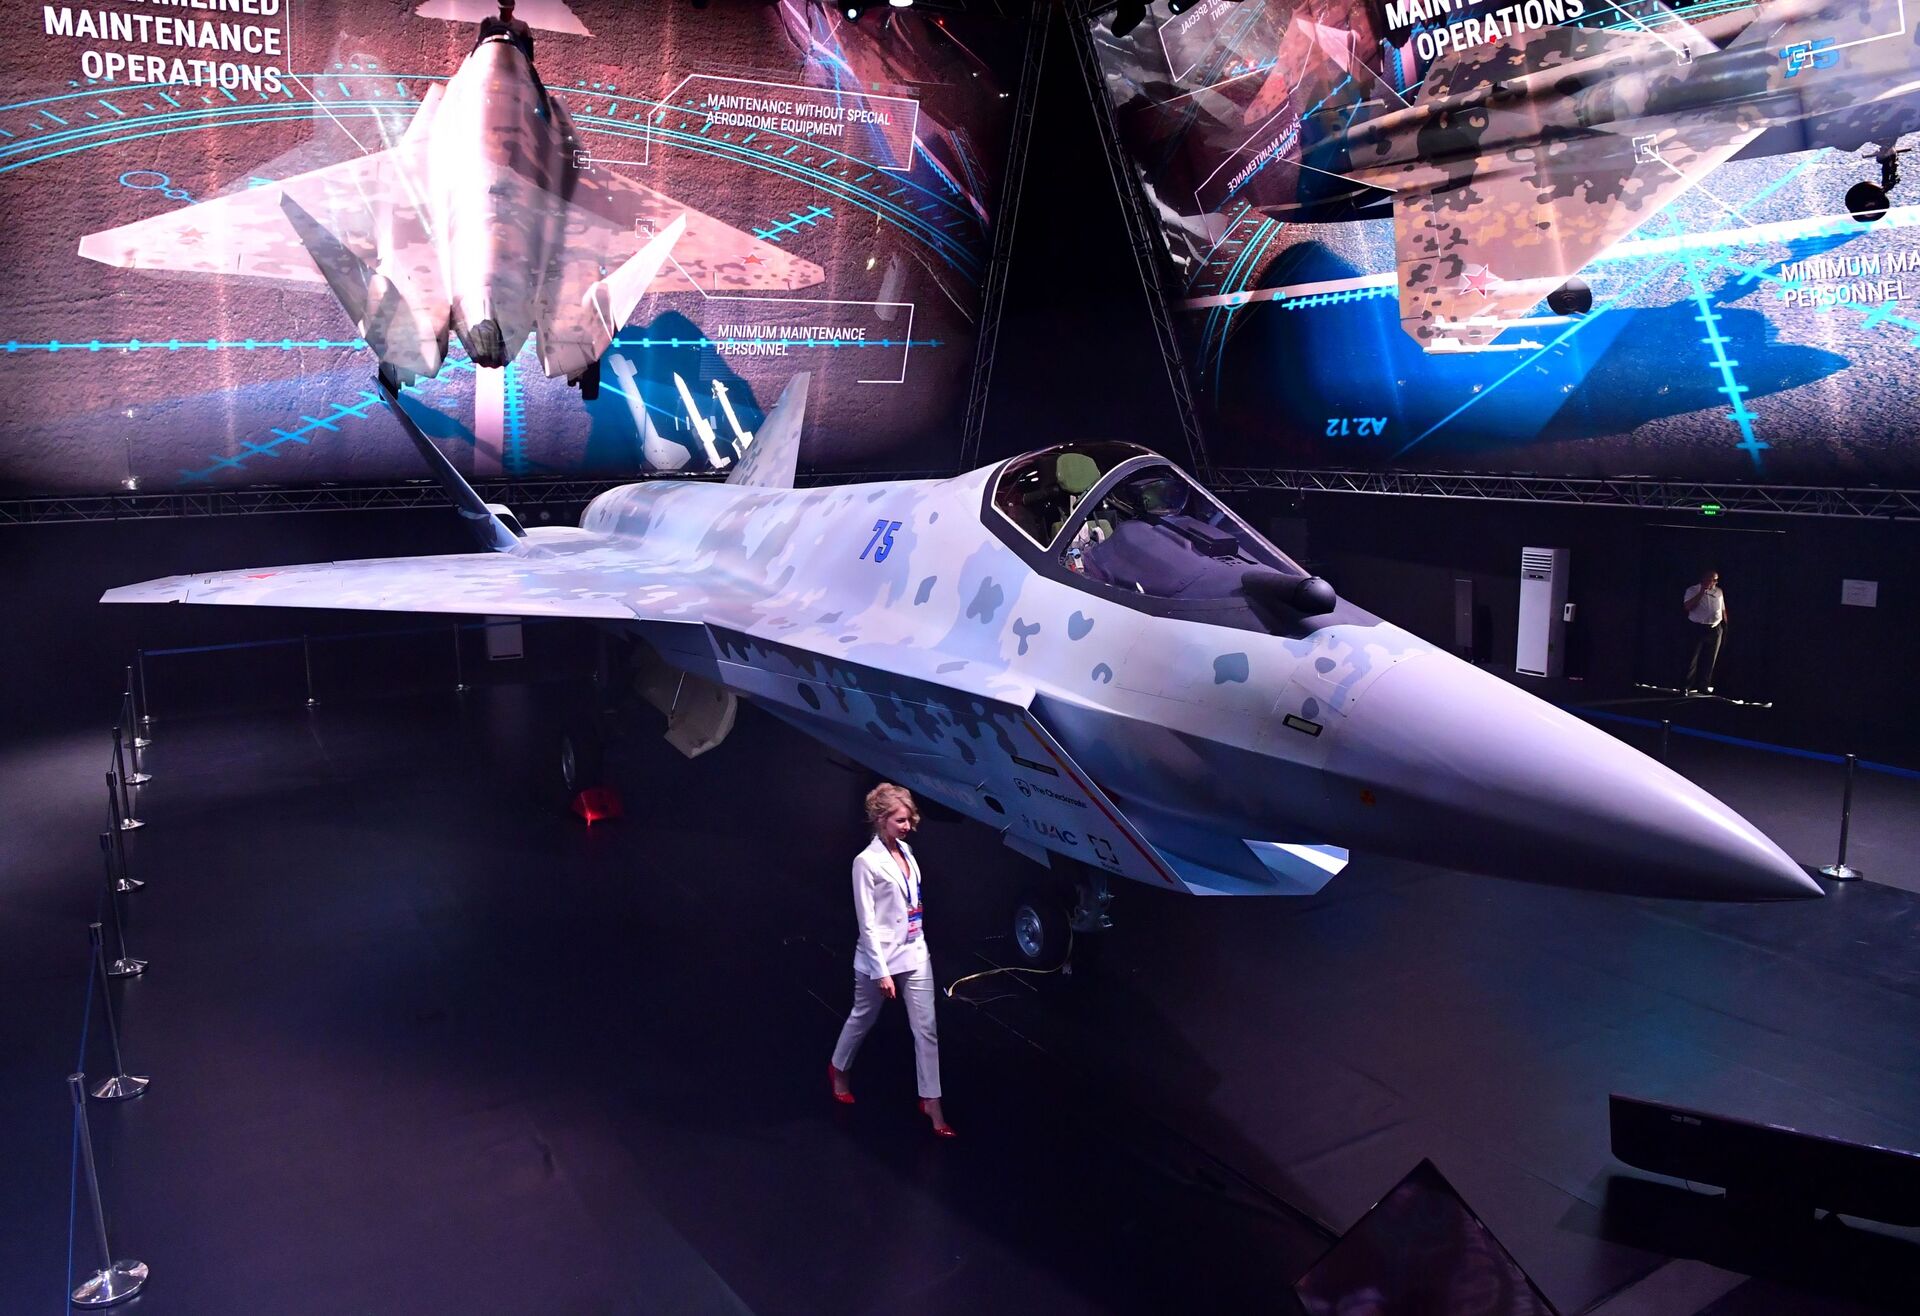 مقاتلة سوخوي تشيك ميت (كش ملك) في معرض الطيران والفضاء الدولي ماكس 2021 في جوكوفسكي، ضواحي موسكو، روسيا 20 يوليو 2021 - سبوتنيك عربي, 1920, 23.11.2021